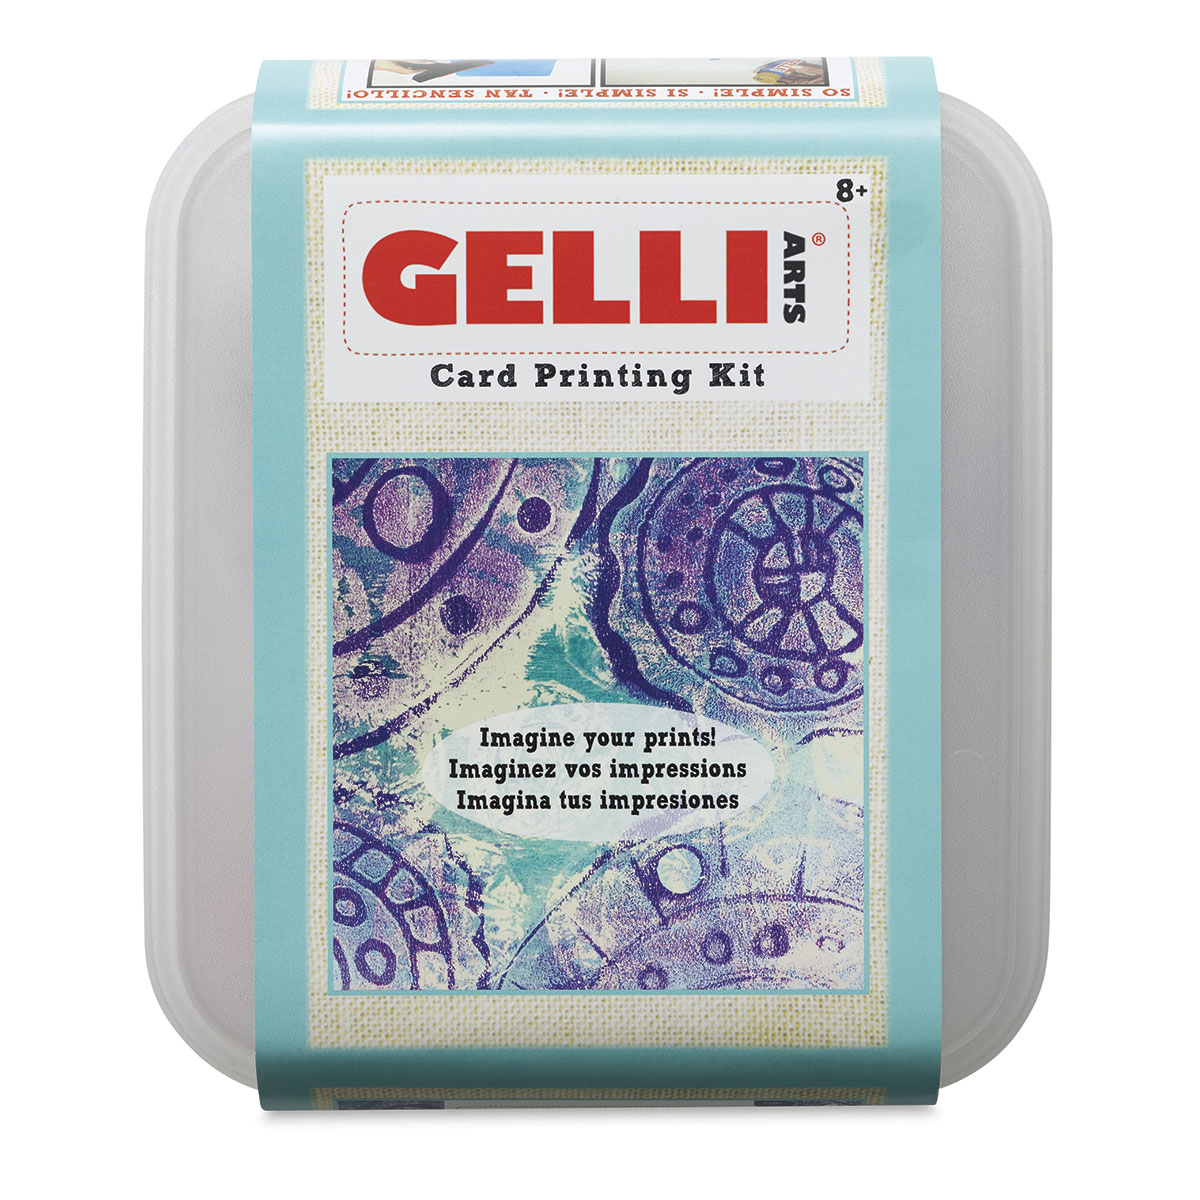 Gelli Arts Stamp Kit with Gel Plate Kit Stamping and Printing Kit, DIY  Stamp Kit, Stamp Making Kit with 5 X 5 Gel Printing Plate and Printmaking  Supplies, Make Your Own, gel